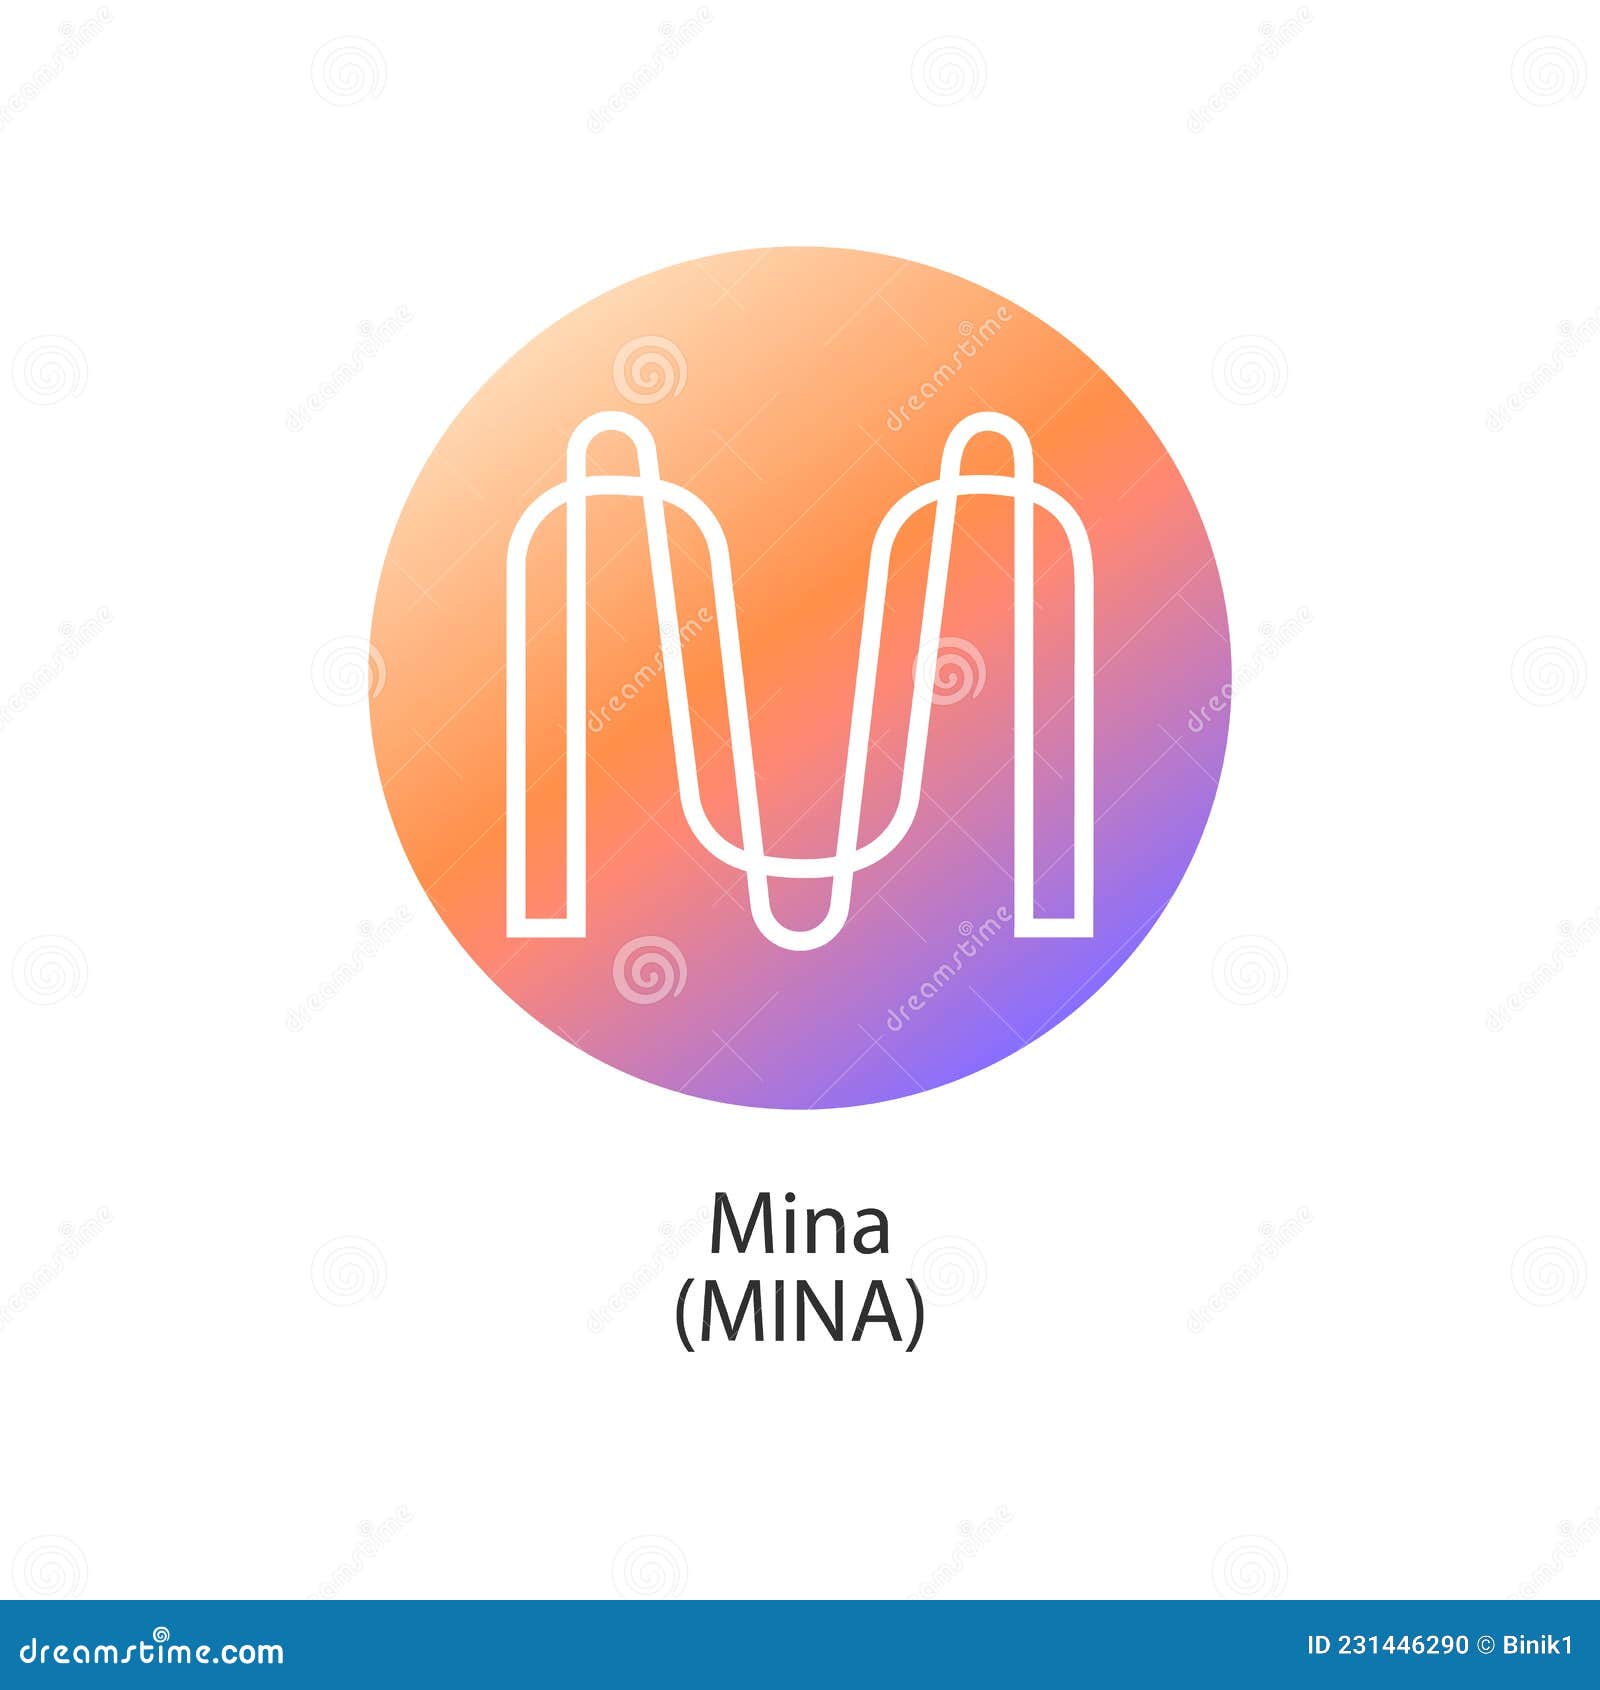 Mina coin